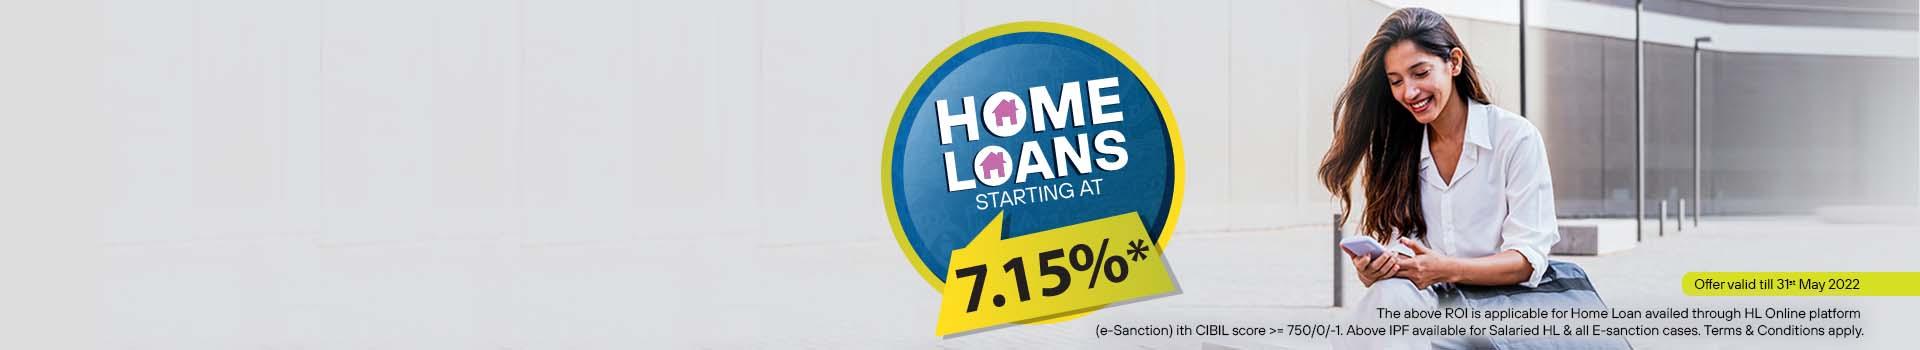 Holi Home Loan offers